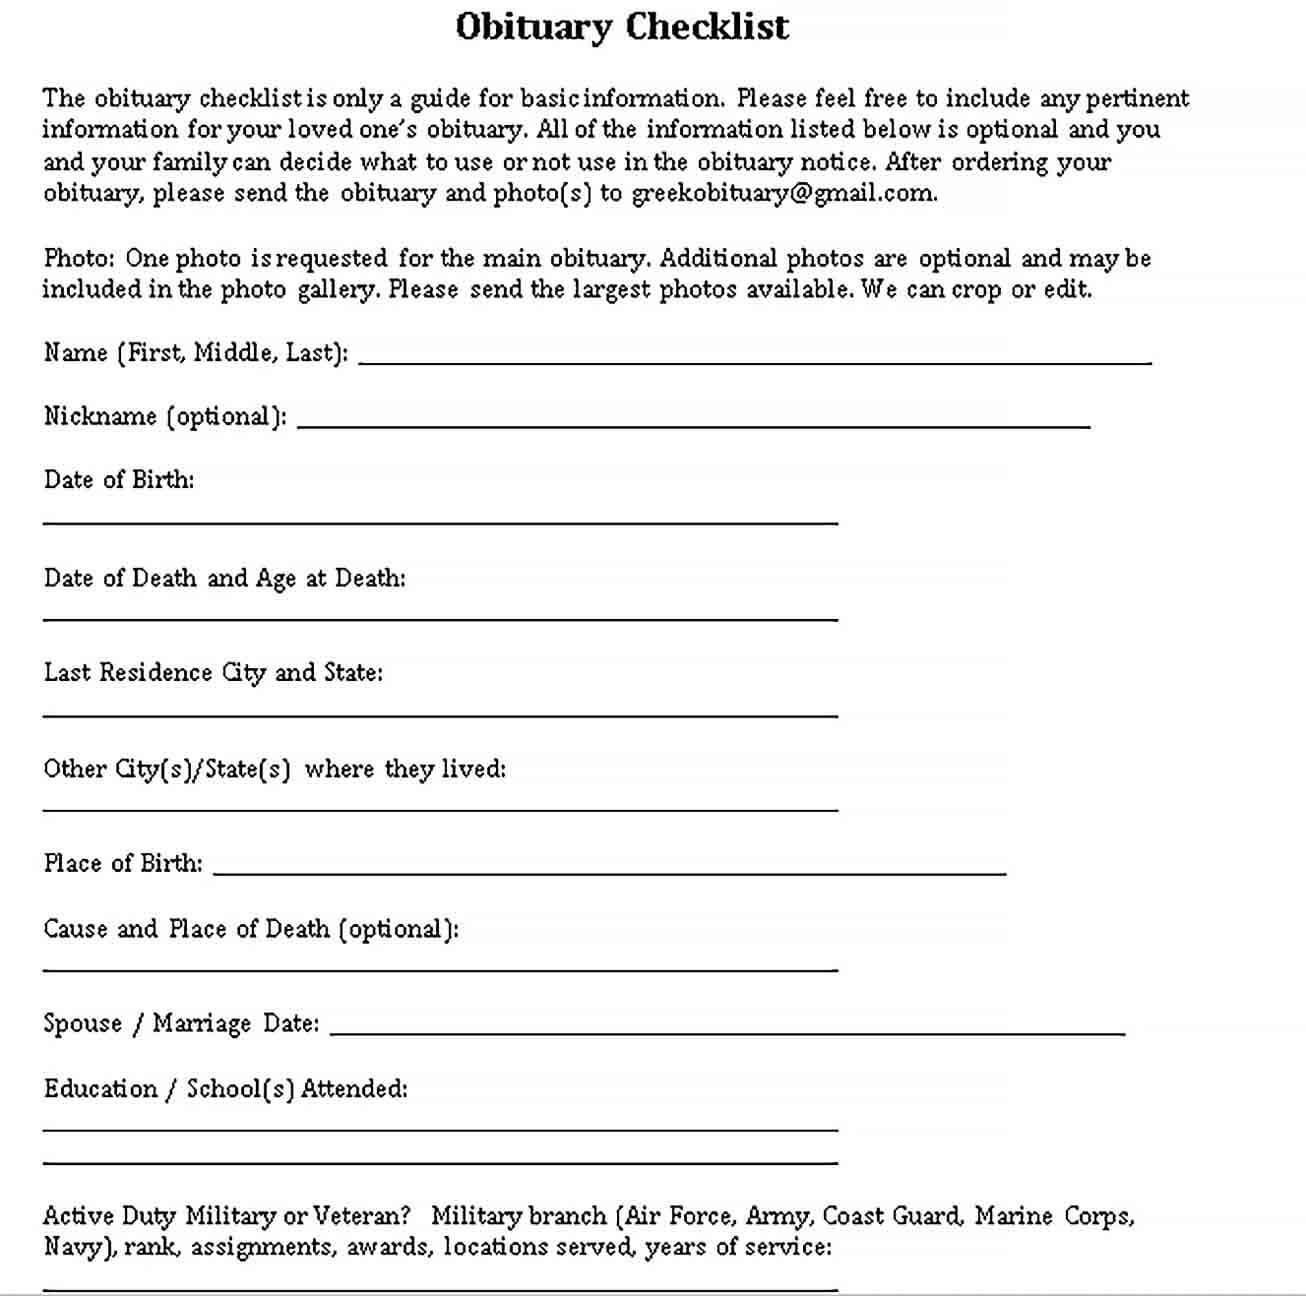 Sample obituary checklist